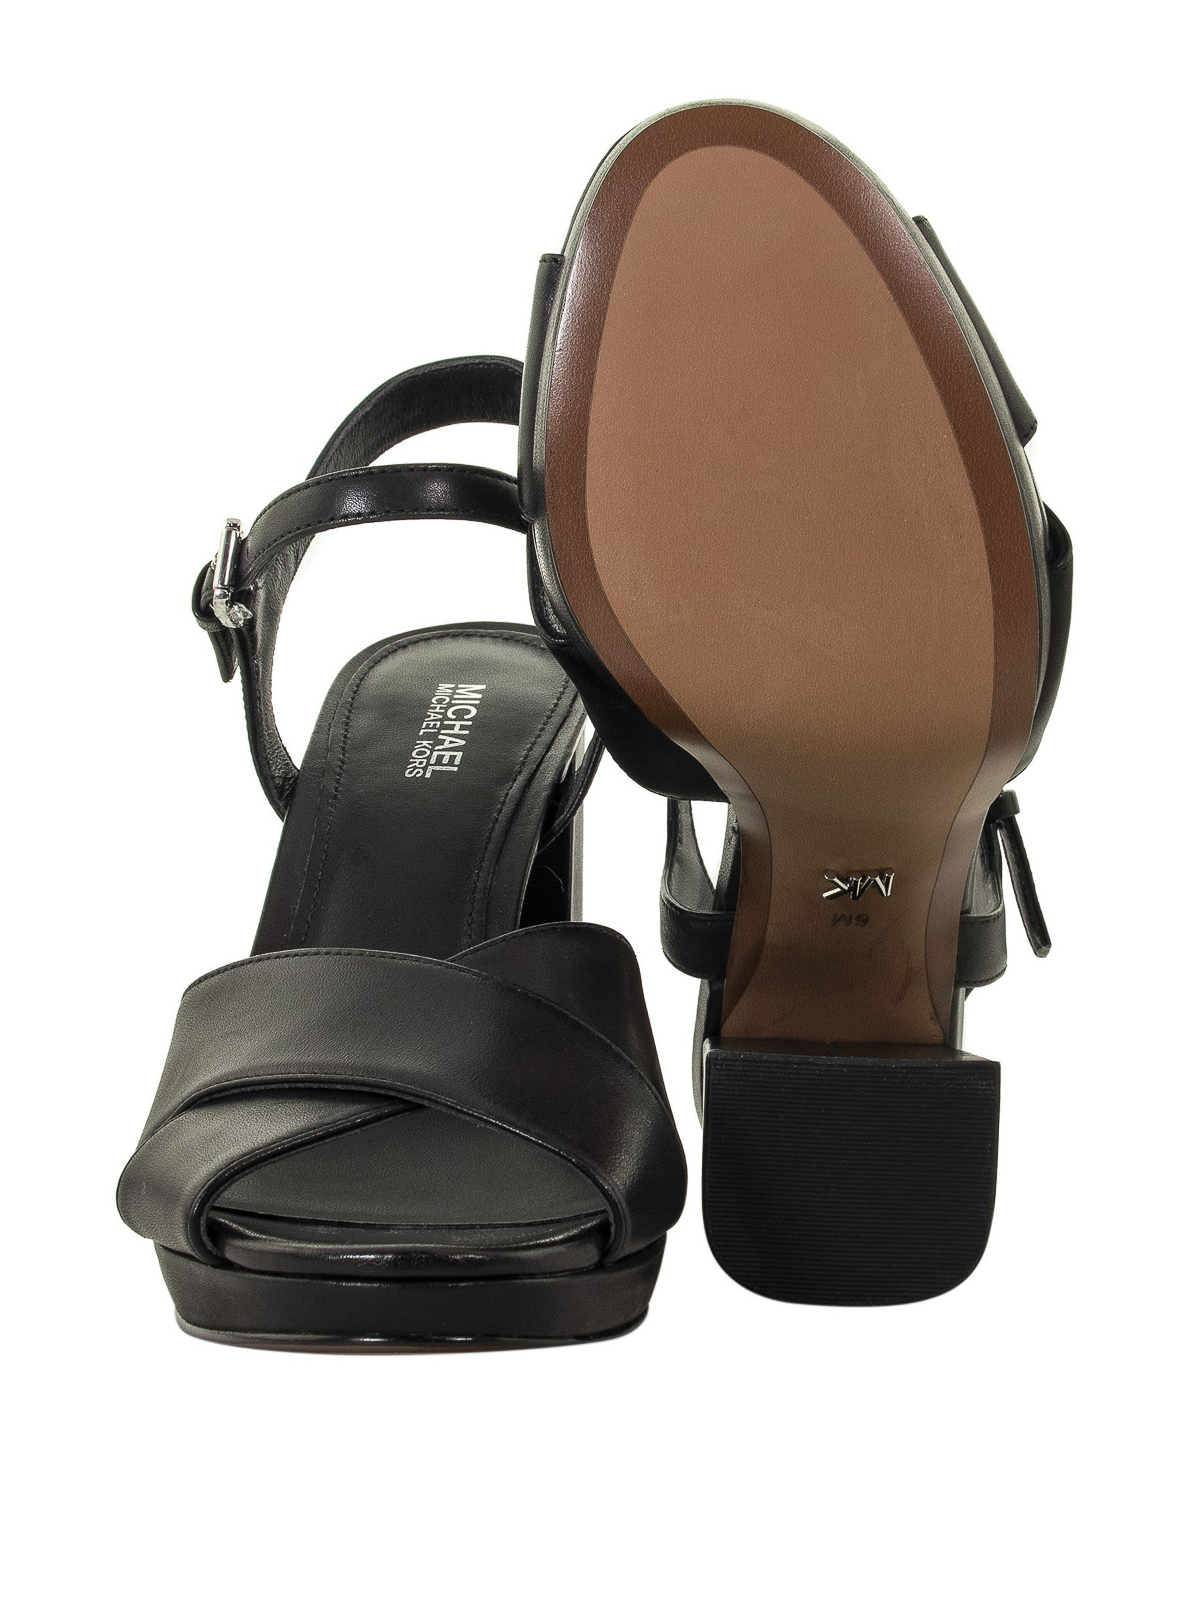 Sandals Michael Kors - Alexia black sandals - 40S9AXHS1L001 | iKRIX.com